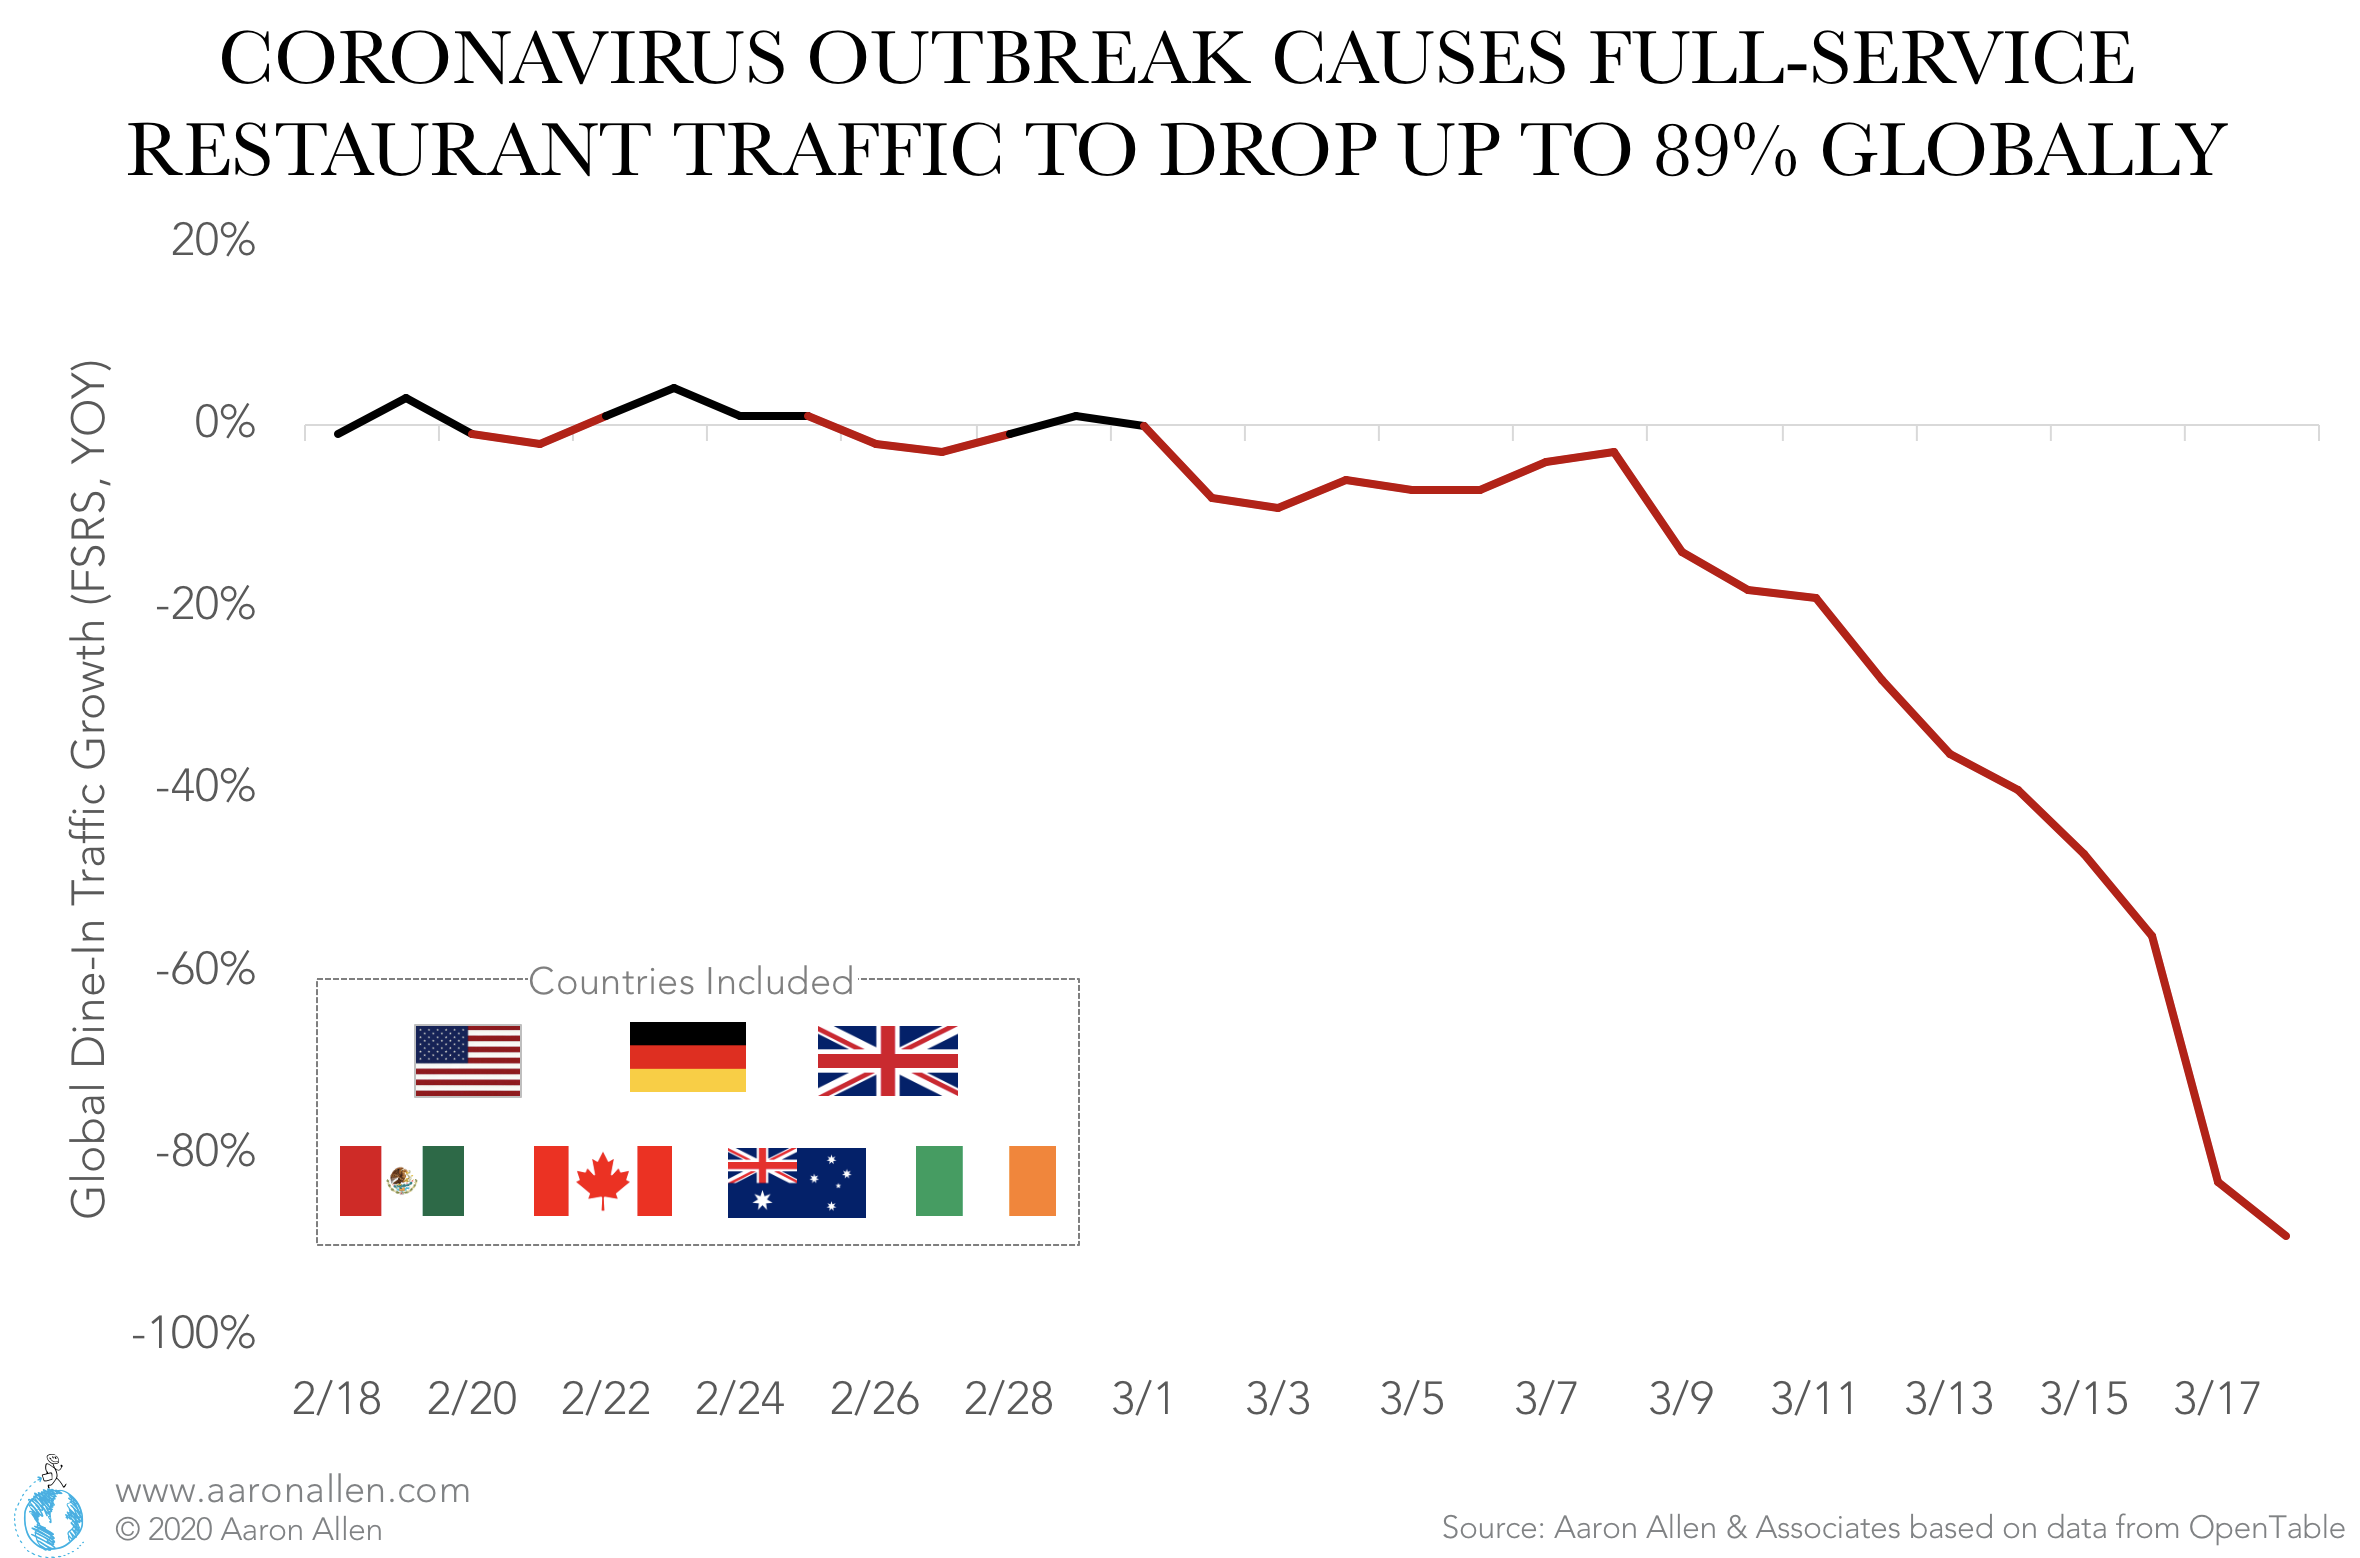 Coronavirus effect on global restaurant traffic